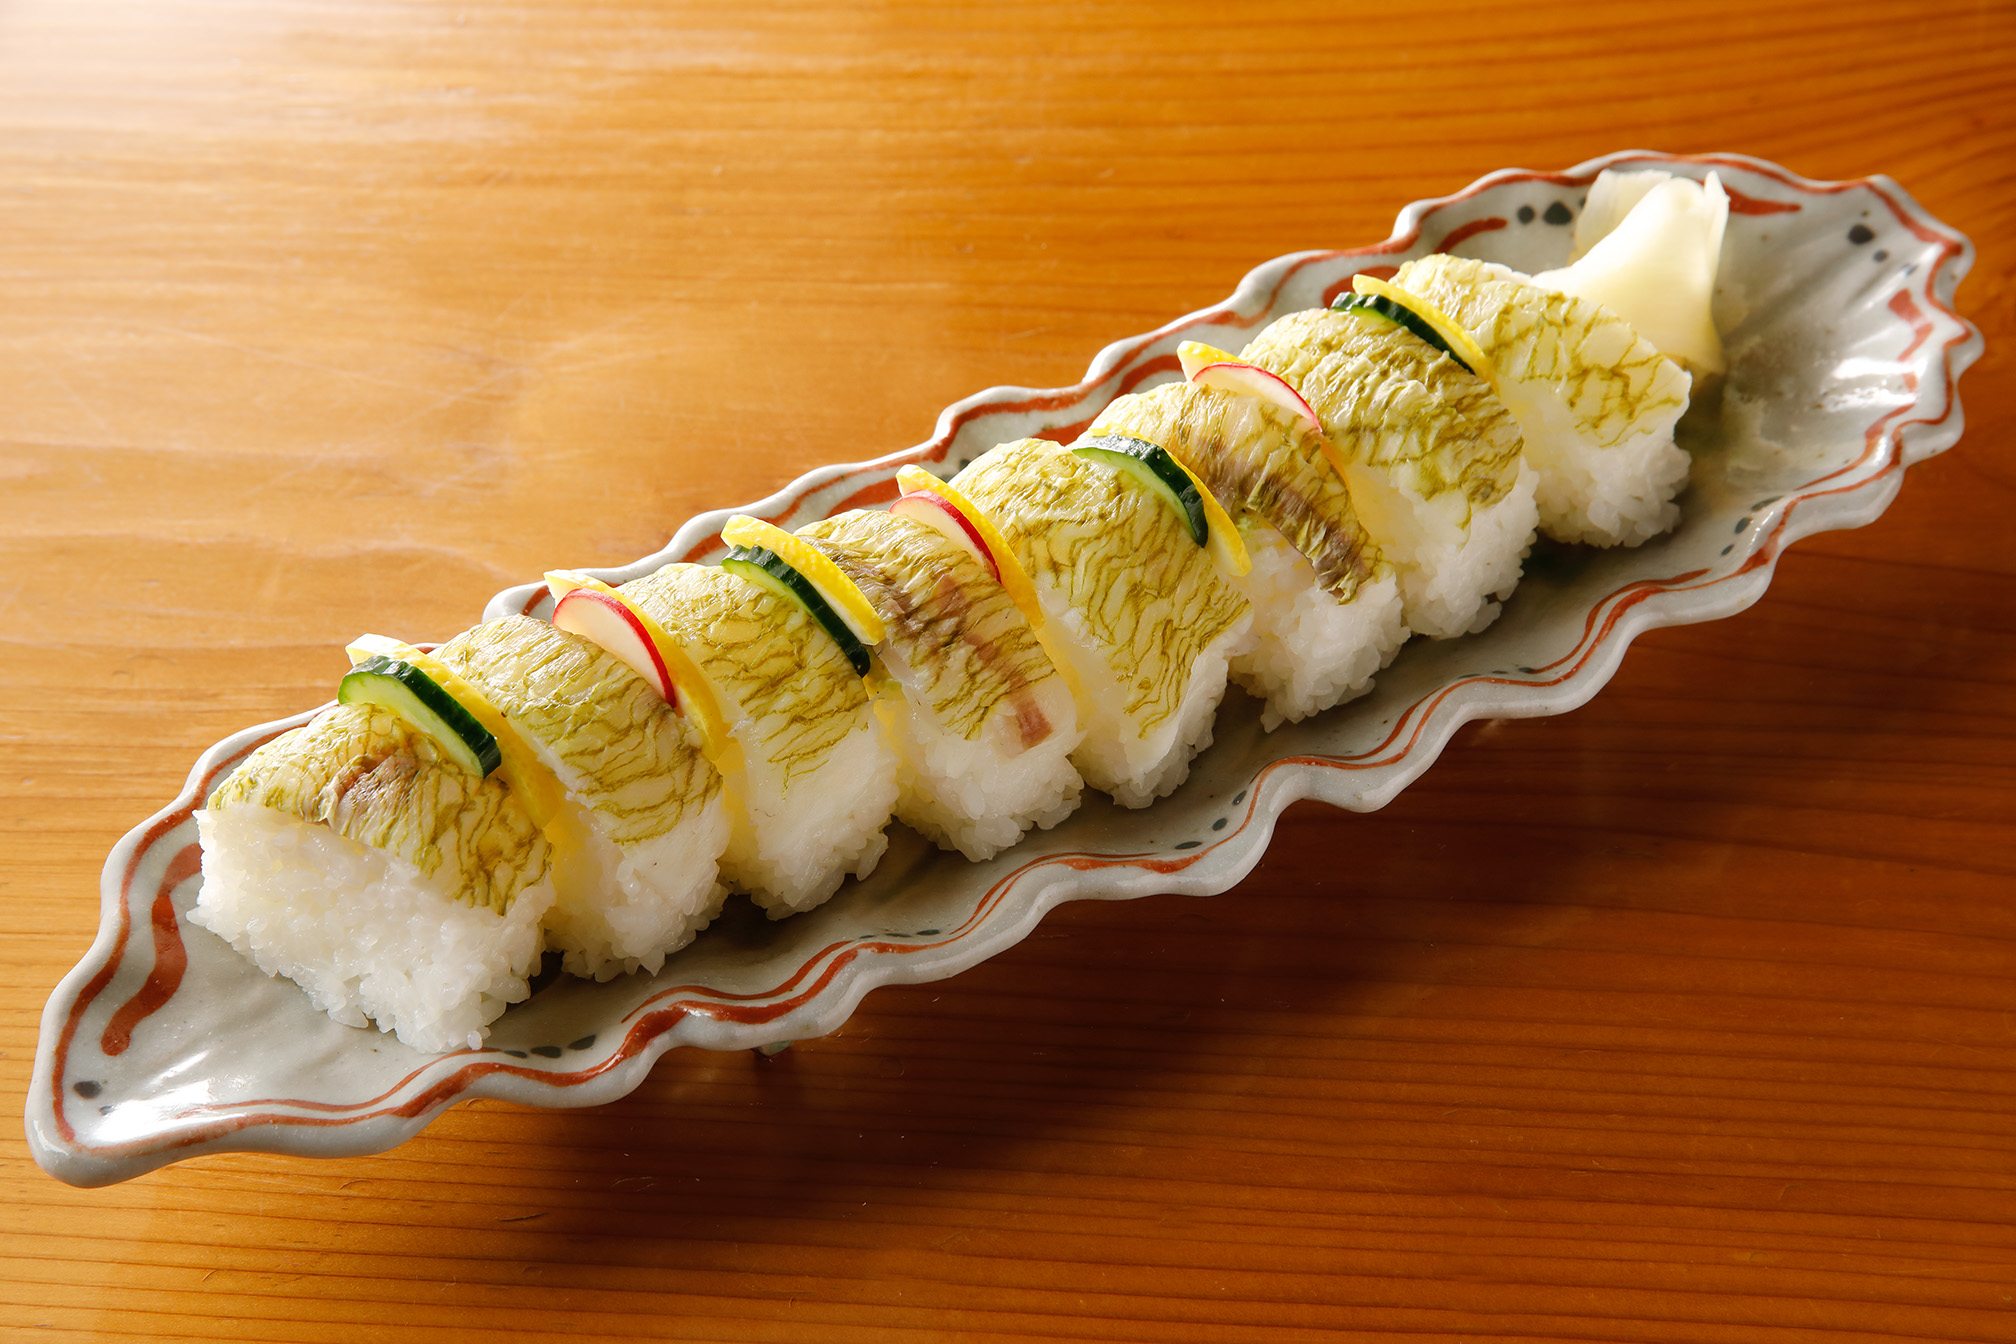 鯛の棒寿司